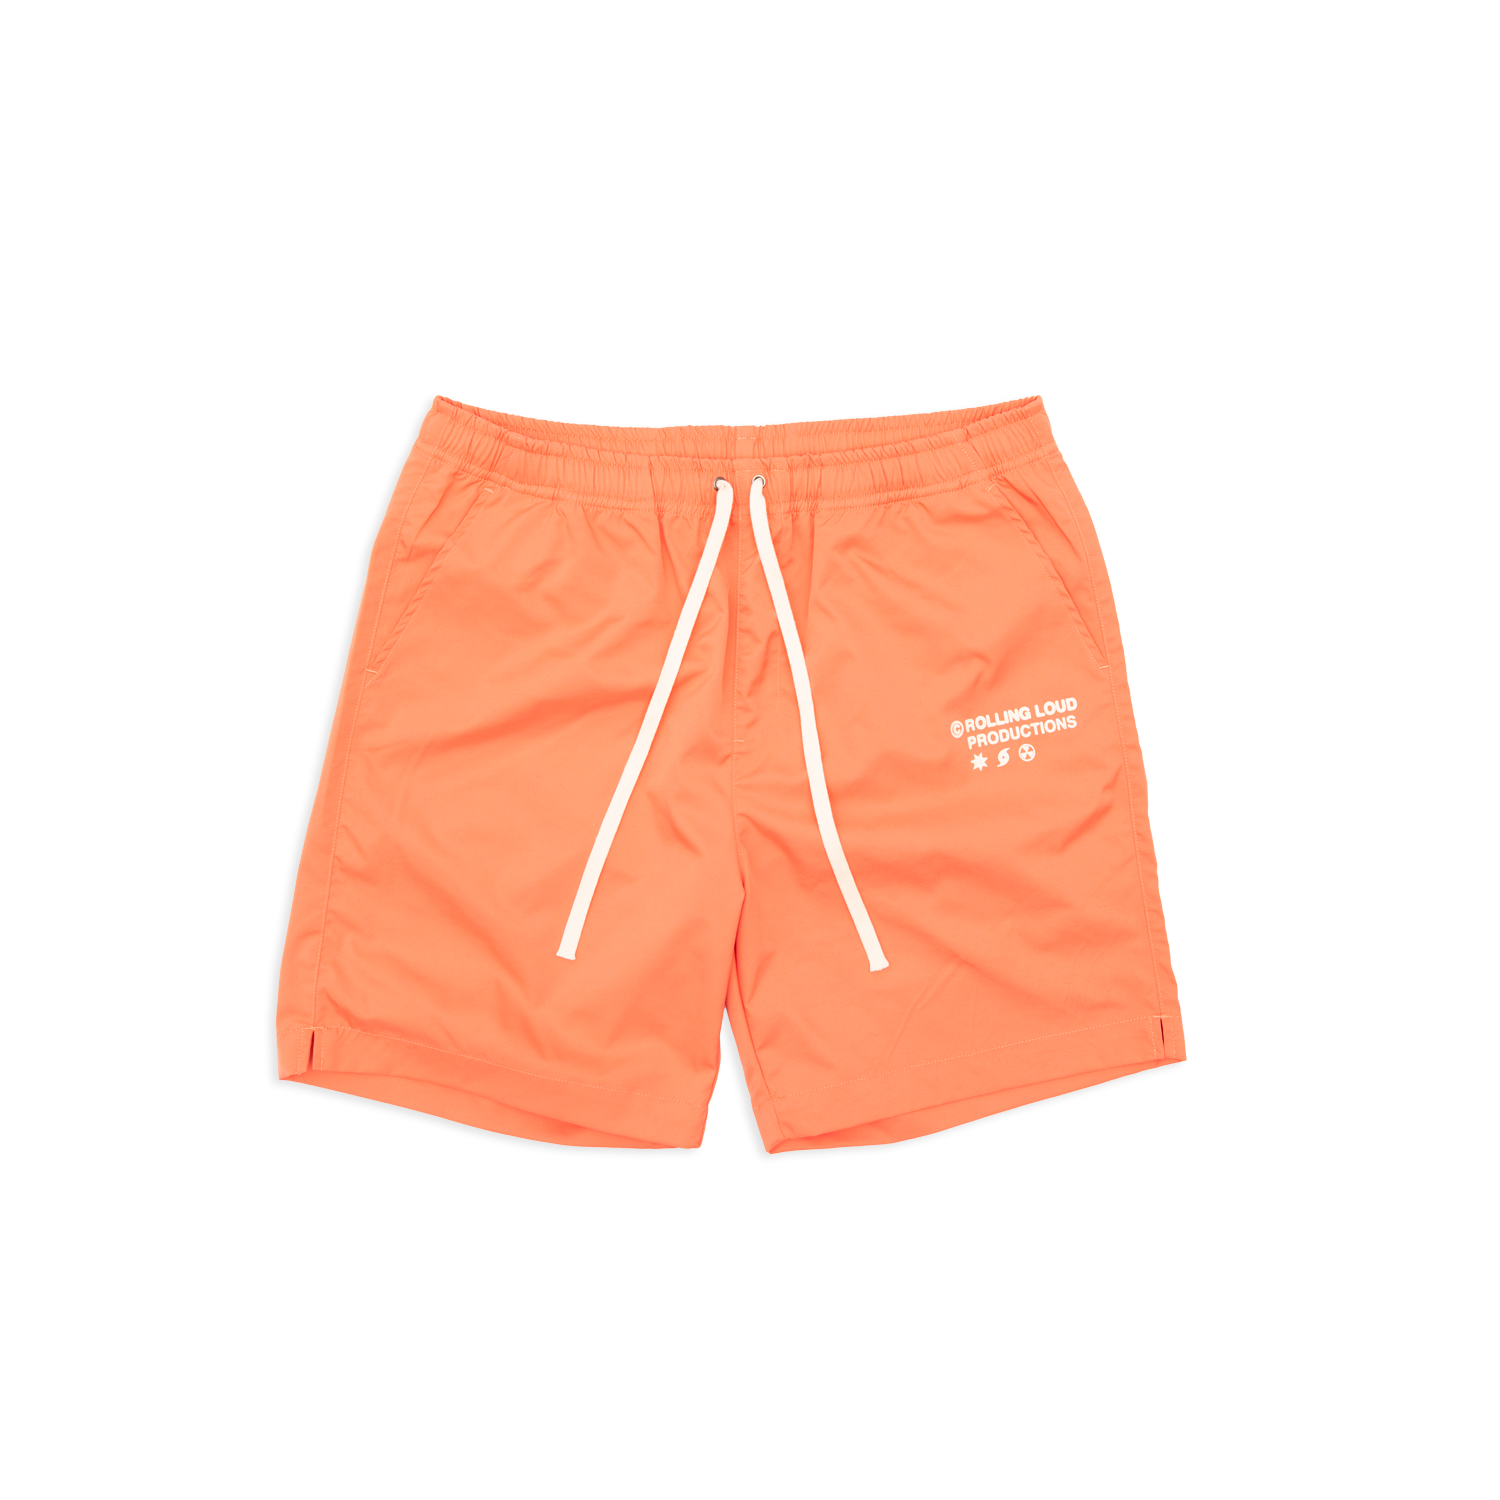 RL Productions Iridescent Orange Nylon Shorts